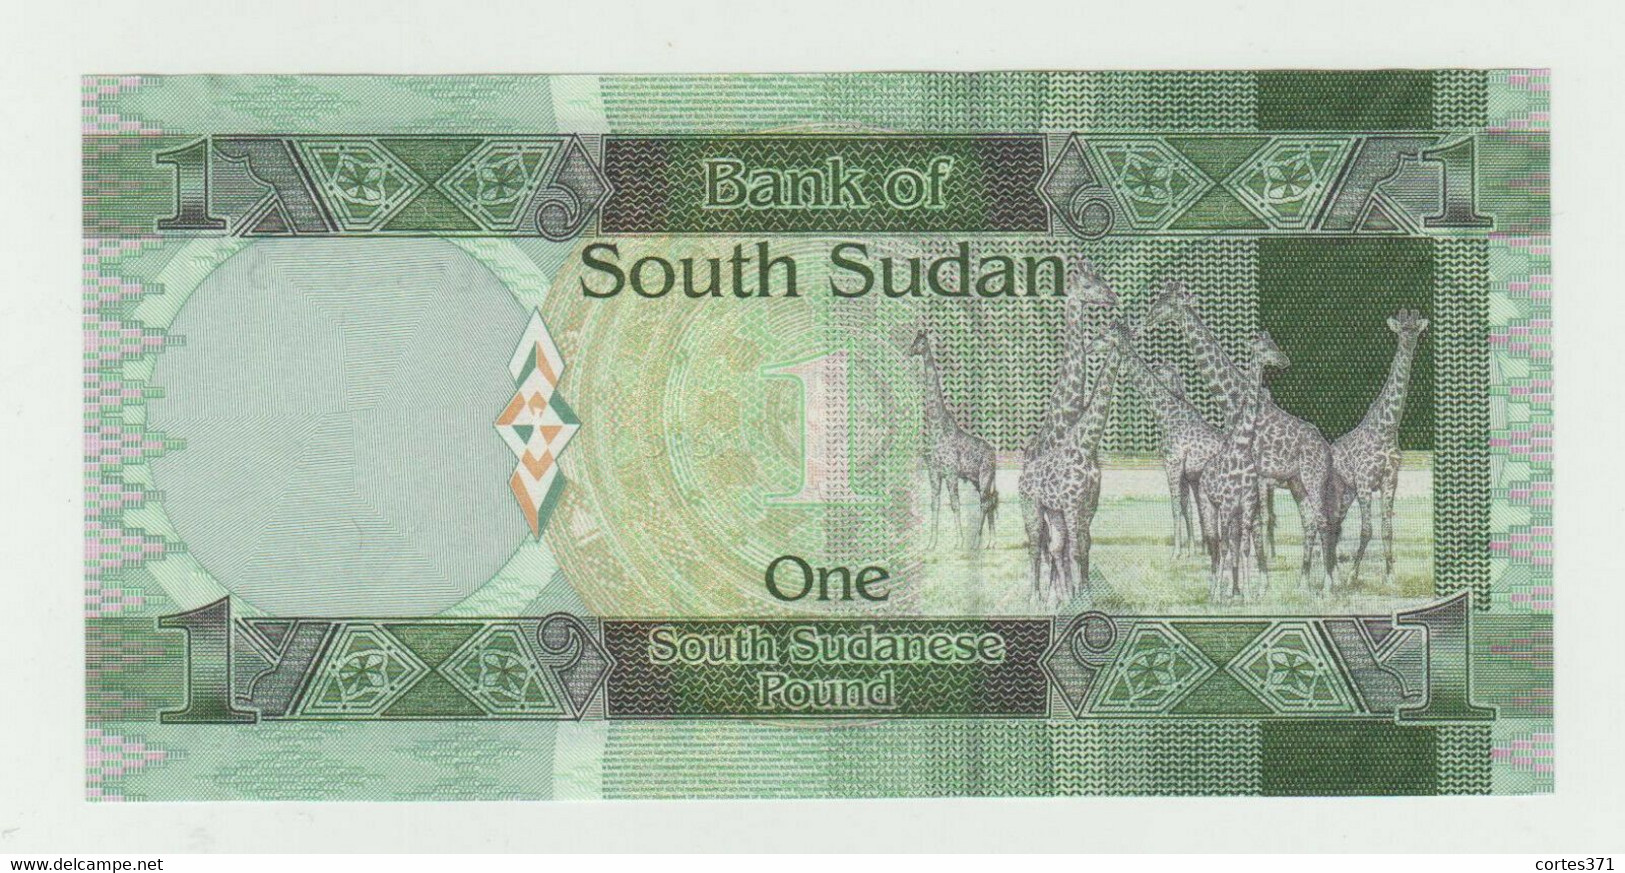 South Sudan 1 Pound 2011 P-5 UNC - Soudan Du Sud